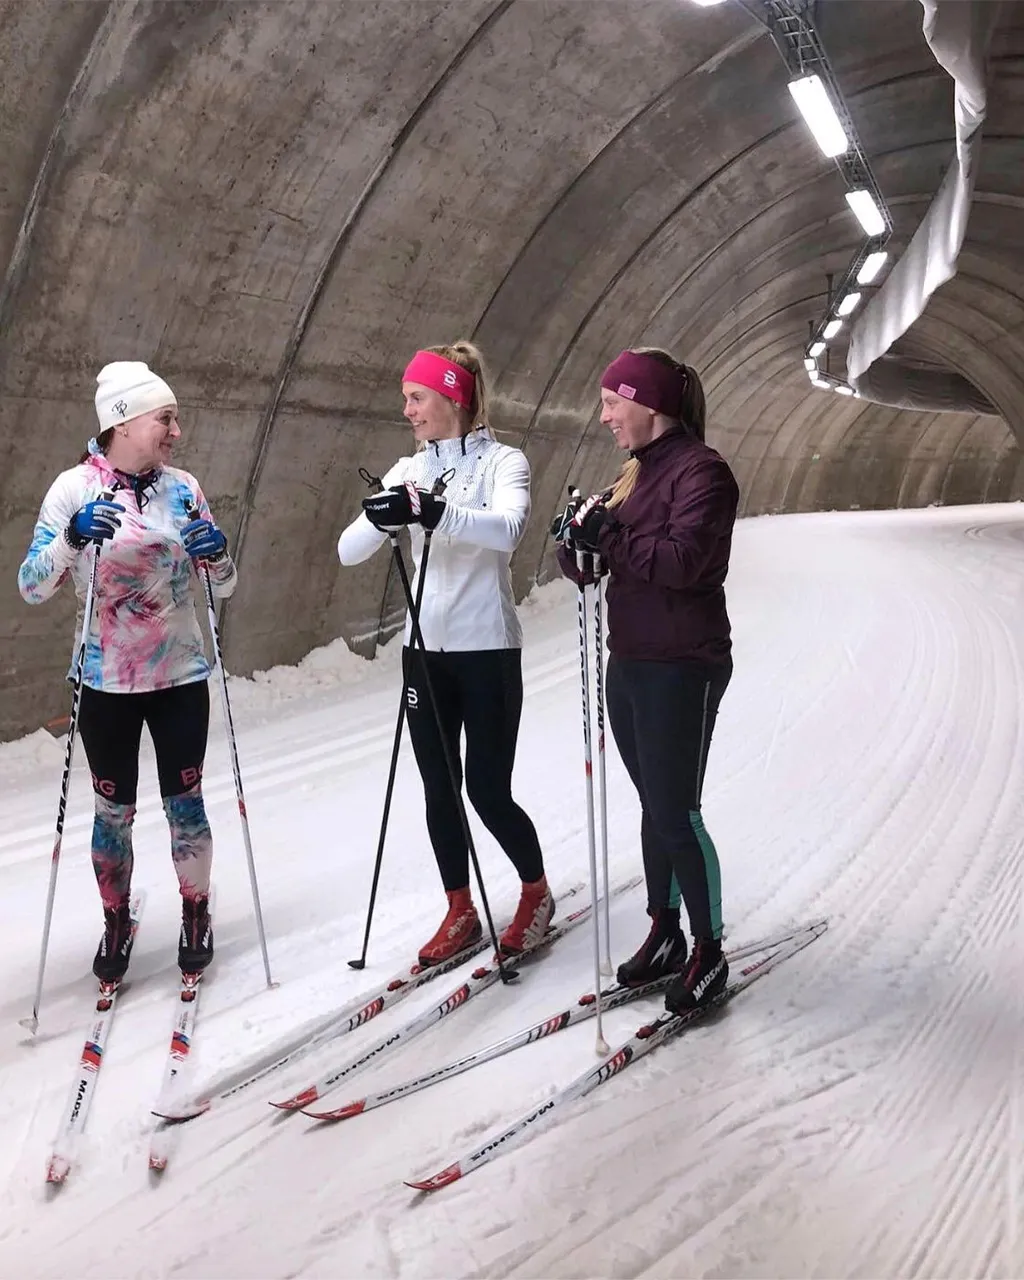 این تونل که از طاق های بتنی ساخته شده و شیب طبیعی دامنه تپه را دنبال می کند، اولین تونل اسکی سوئد است. همچنین در هنگام افتتاح طولانی ترین تونل اسکی در جهان بود. ساخت آن نیاز به نوآوری داشت.